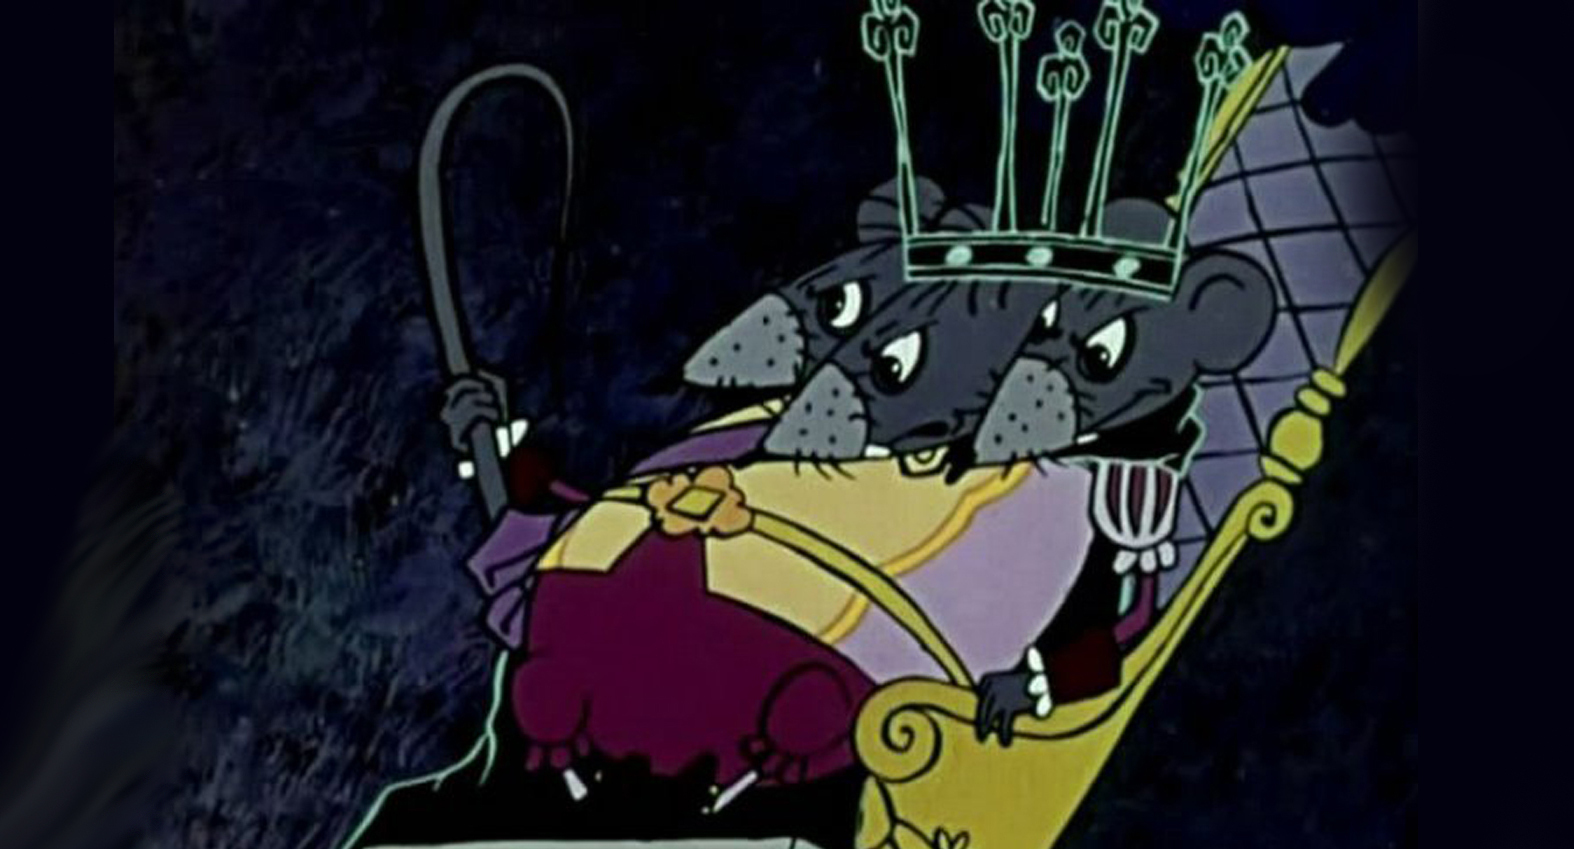 Картинки крысиного короля. Мышиный Король 1973. Щелкунчик 1973 Мышильда. Щелкунчик крысиный Король 1973. Мышиный Король из Щелкунчика 1973.